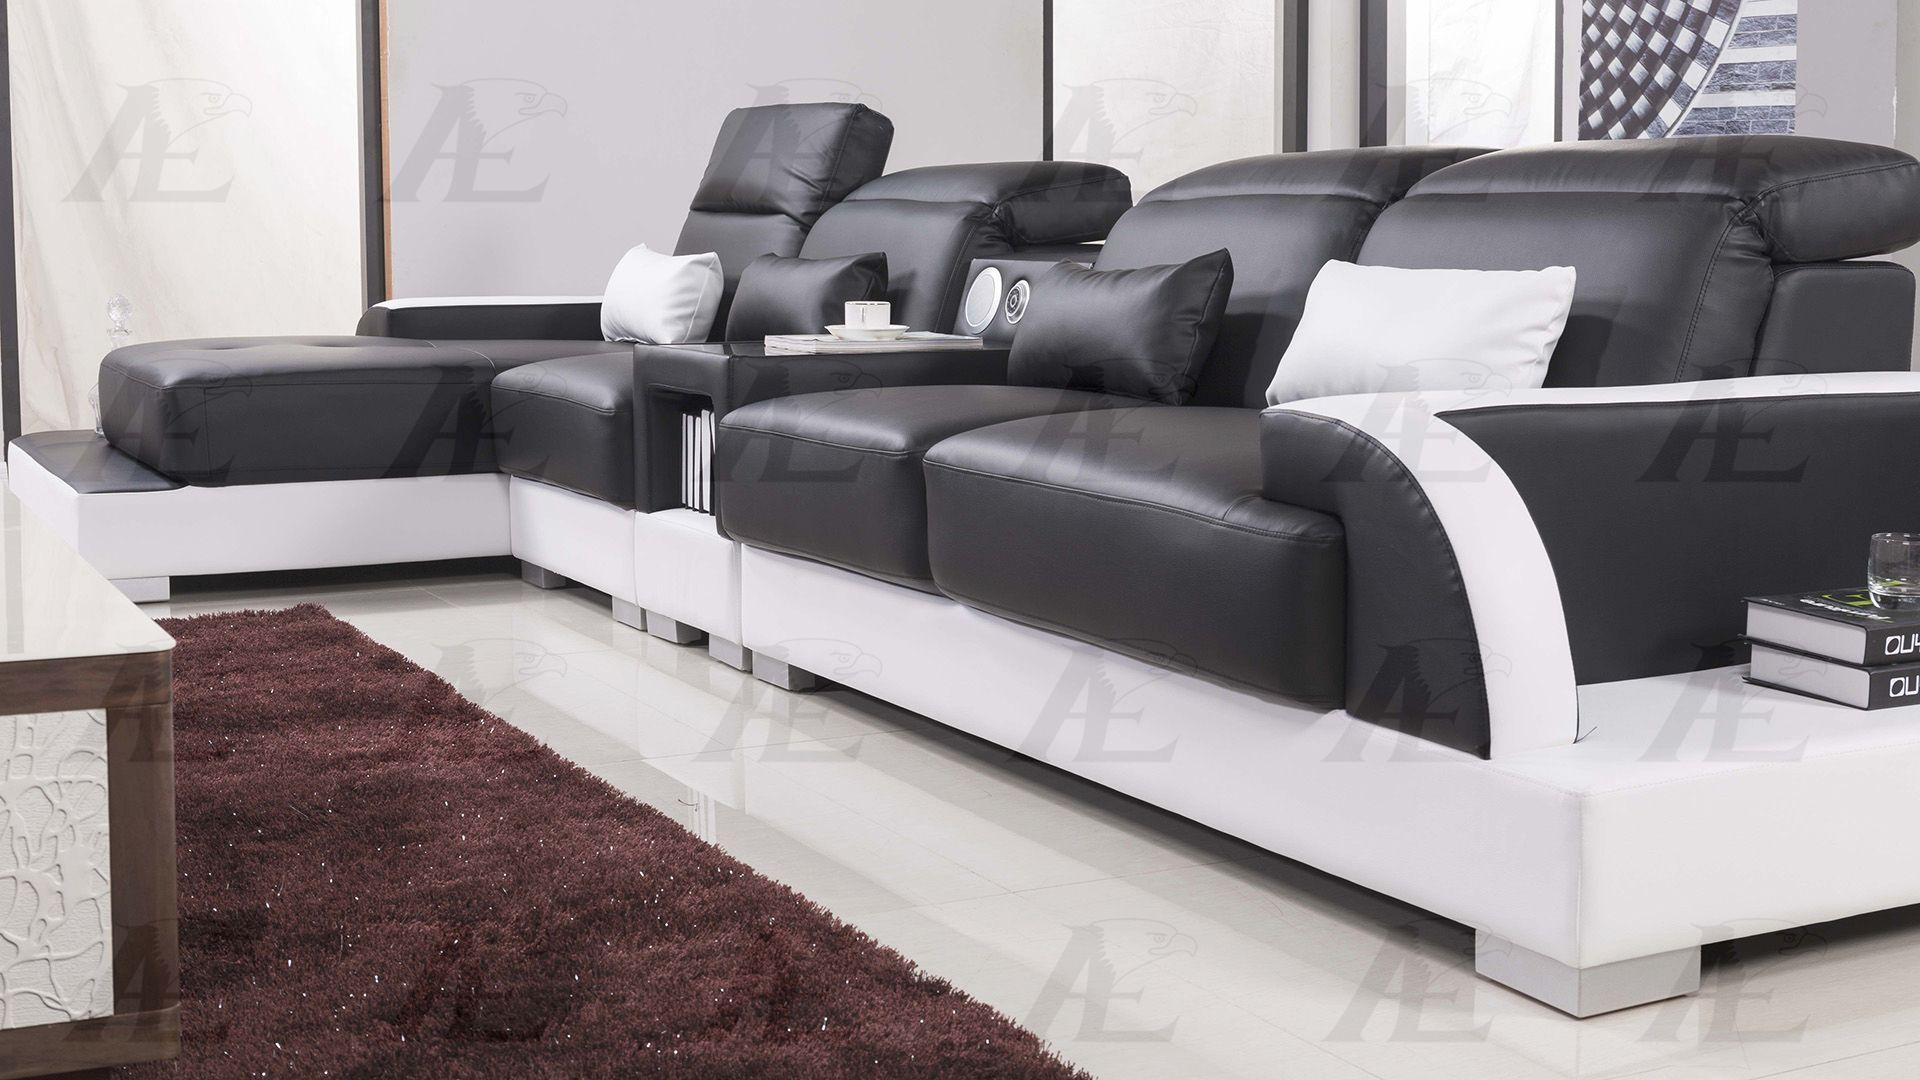 

    
American Eagle Furniture AE-LD812-BK.W Sectional Sofa White/Black AE-LD812L-BK.W
